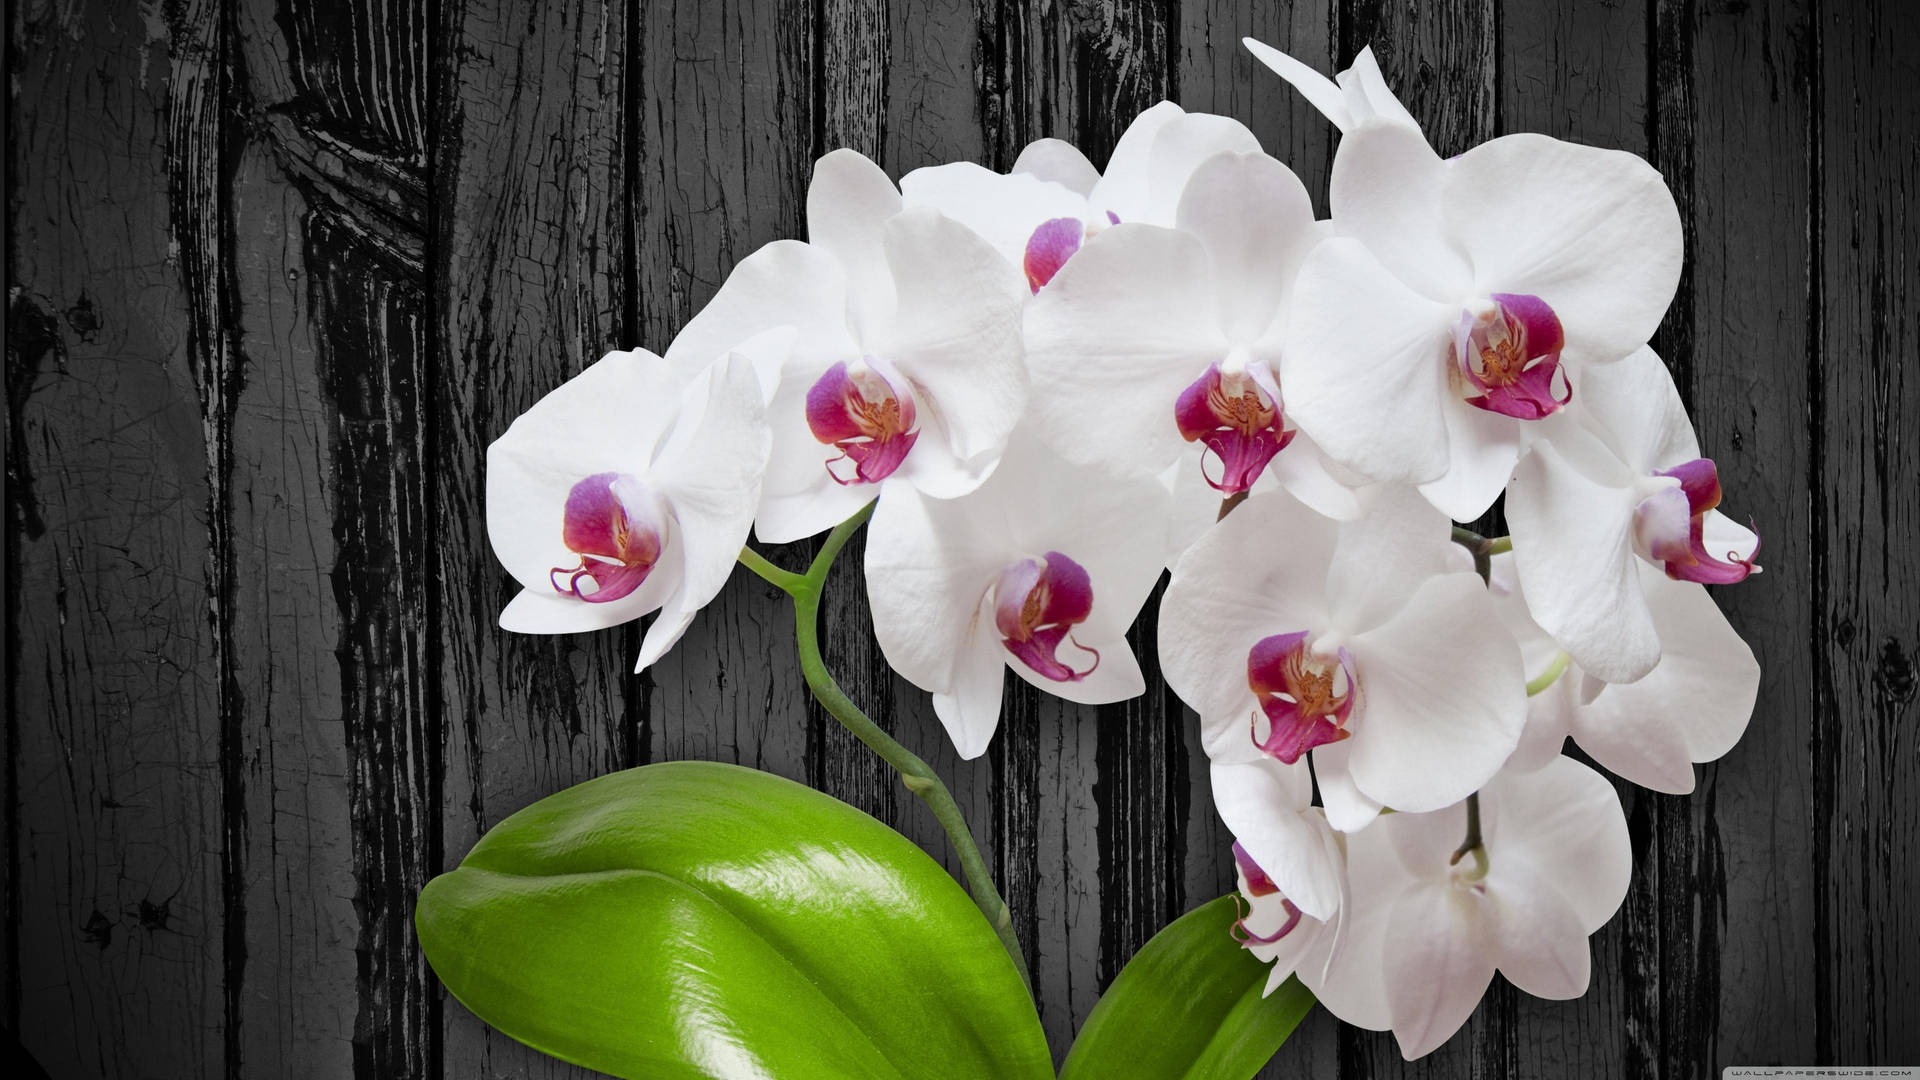 Serene Beauty Of White Flowers Wallpaper